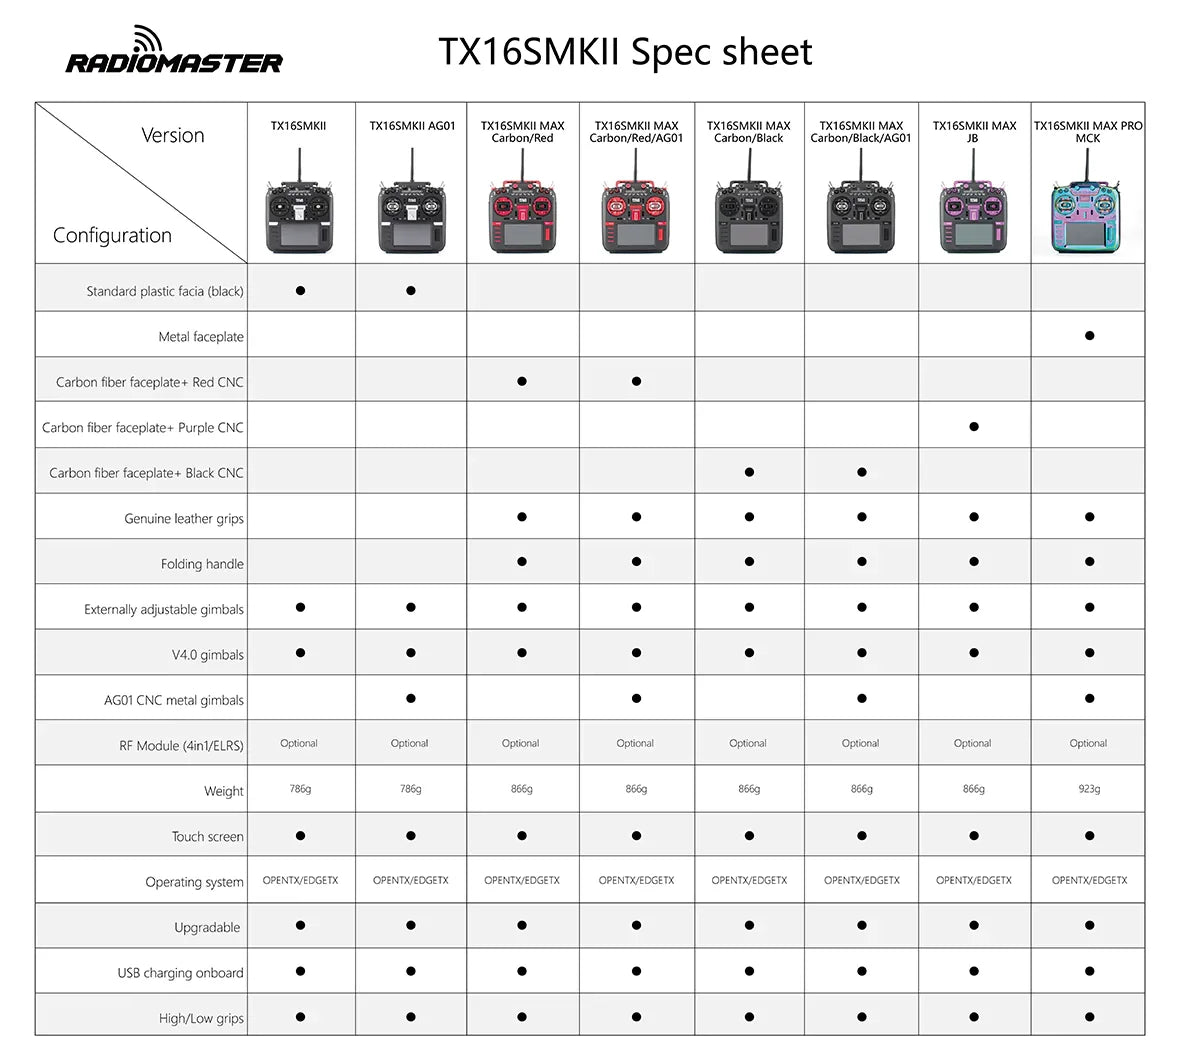 RADiOMASTER TXI6SMKII Spec sheet IxI